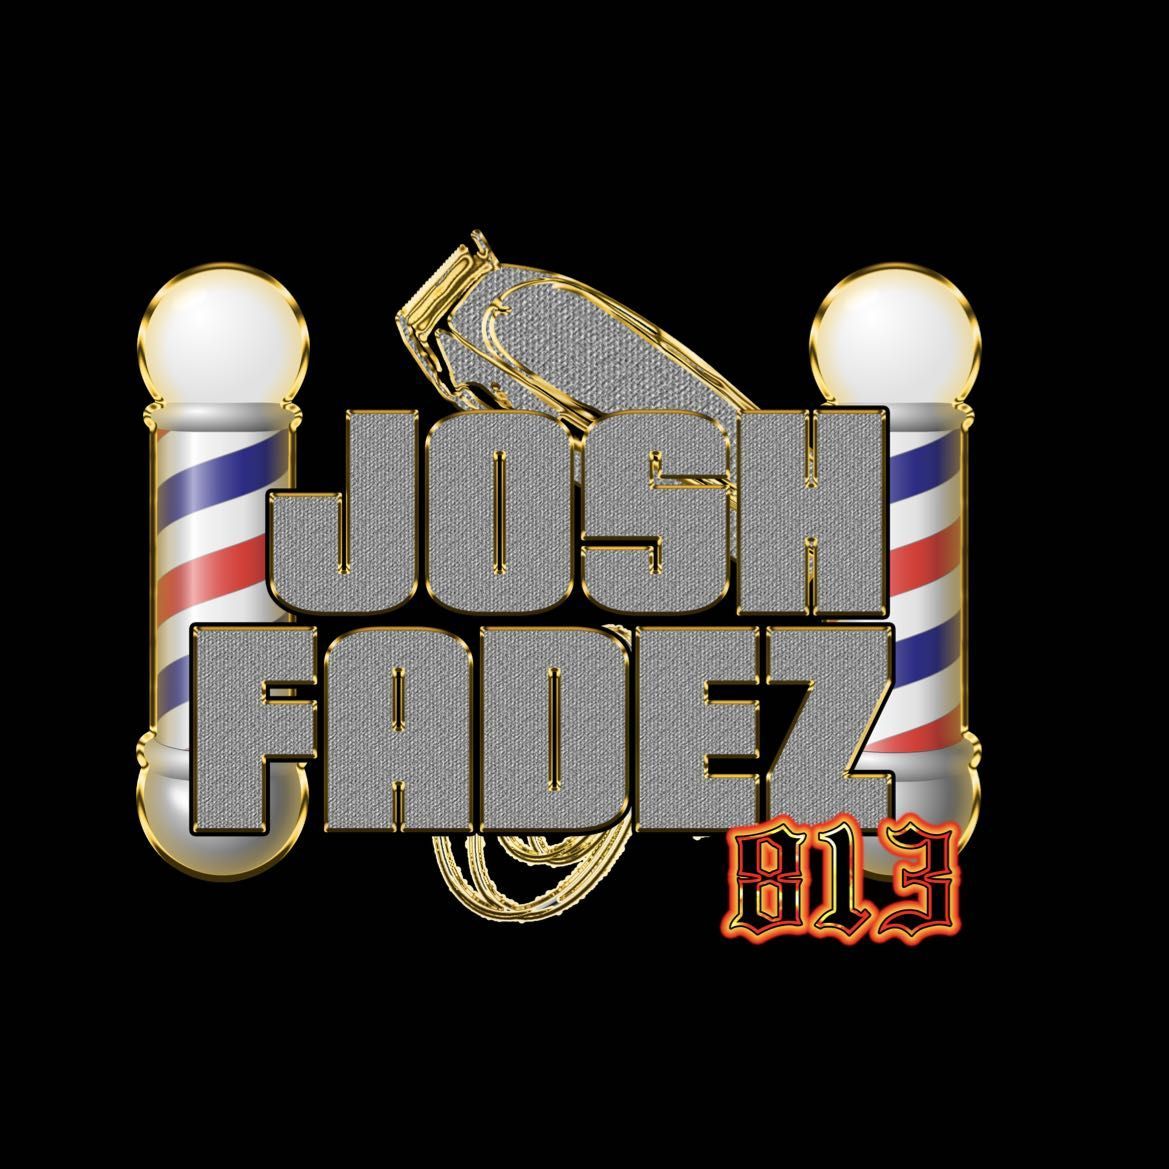 Josh Fadez 813, 6527 Gunn Hwy, Suite B, Suite B, Tampa, 33625